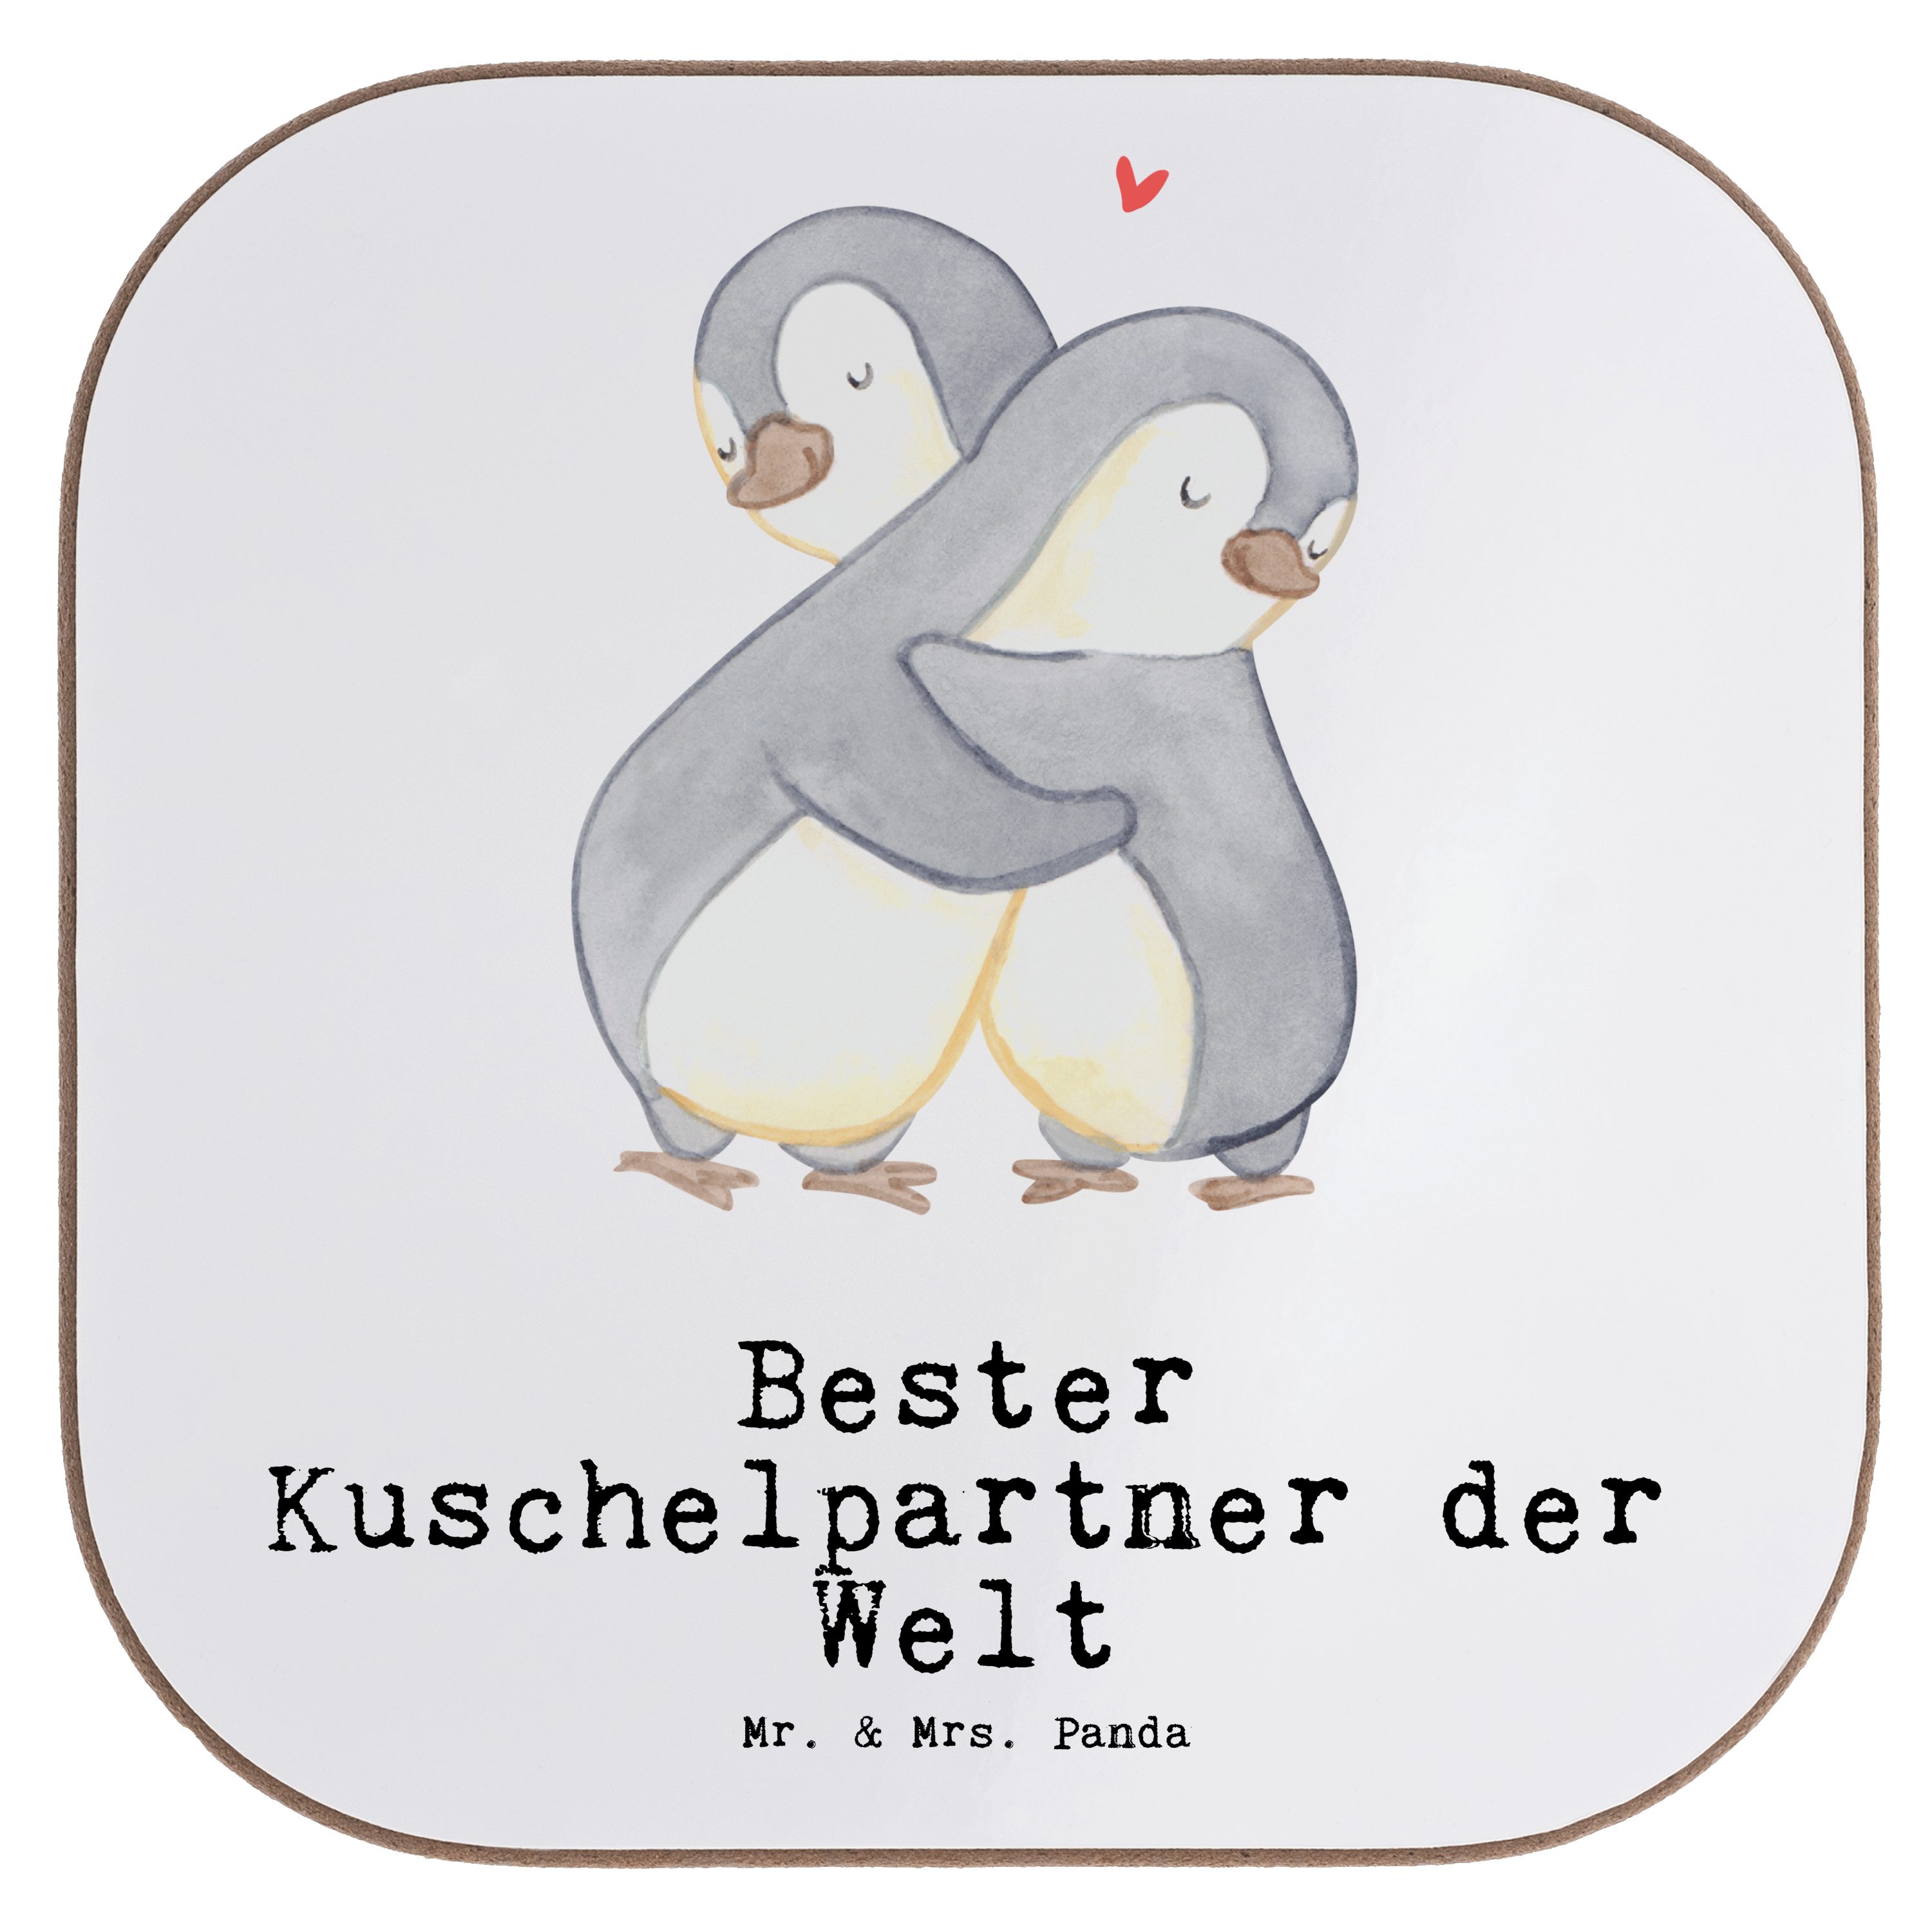 Mr. & Mrs. Panda Getränkeuntersetzer Freude - Bester Kuschelpartner - Weiß 1-tlg. der Pinguin mach, Welt Geschenk